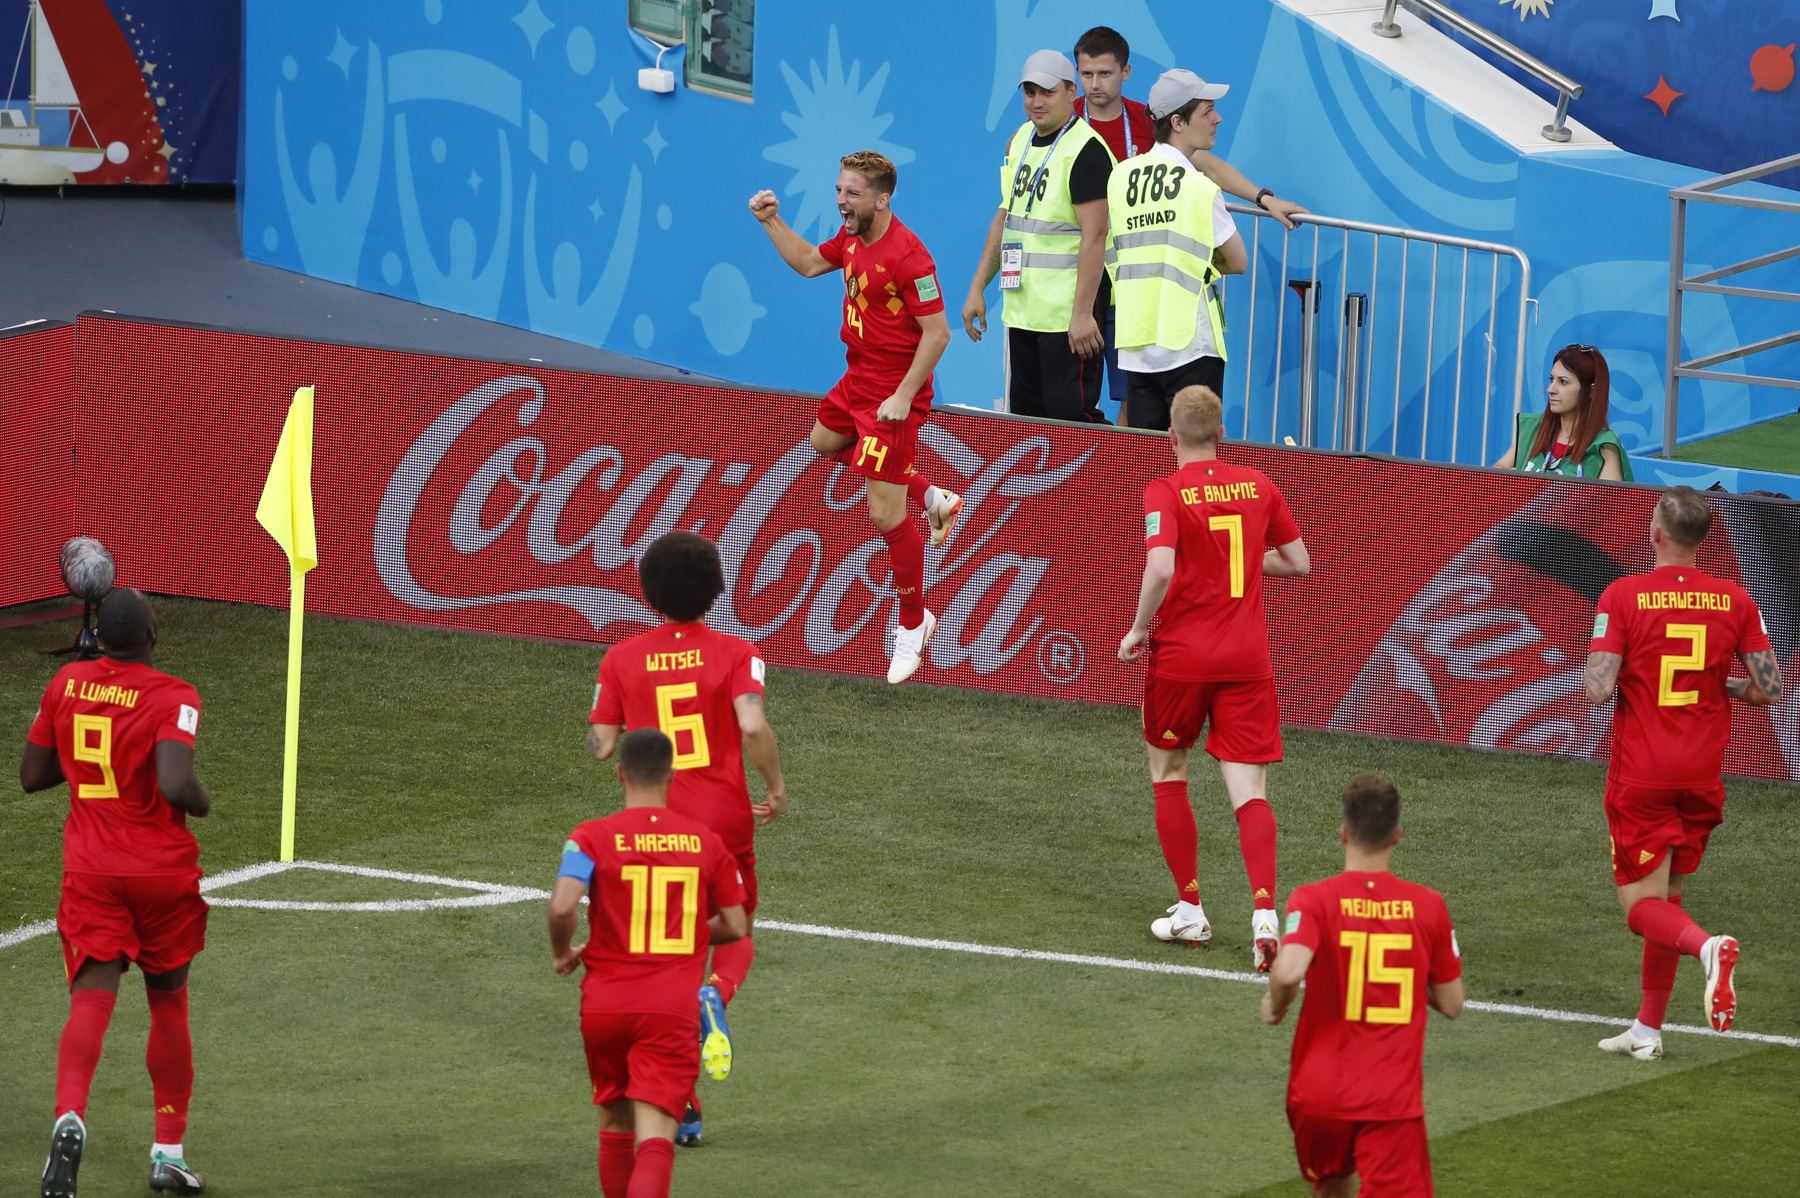 El alero de Bélgica Dries Mertens (C) celebra después de anotar el gol de apertura durante el partido de fútbol de la Copa del Mundo Rusia 2018 Grupo G entre Bélgica y Panamá en el estadio Fisht de Sochi. AFP